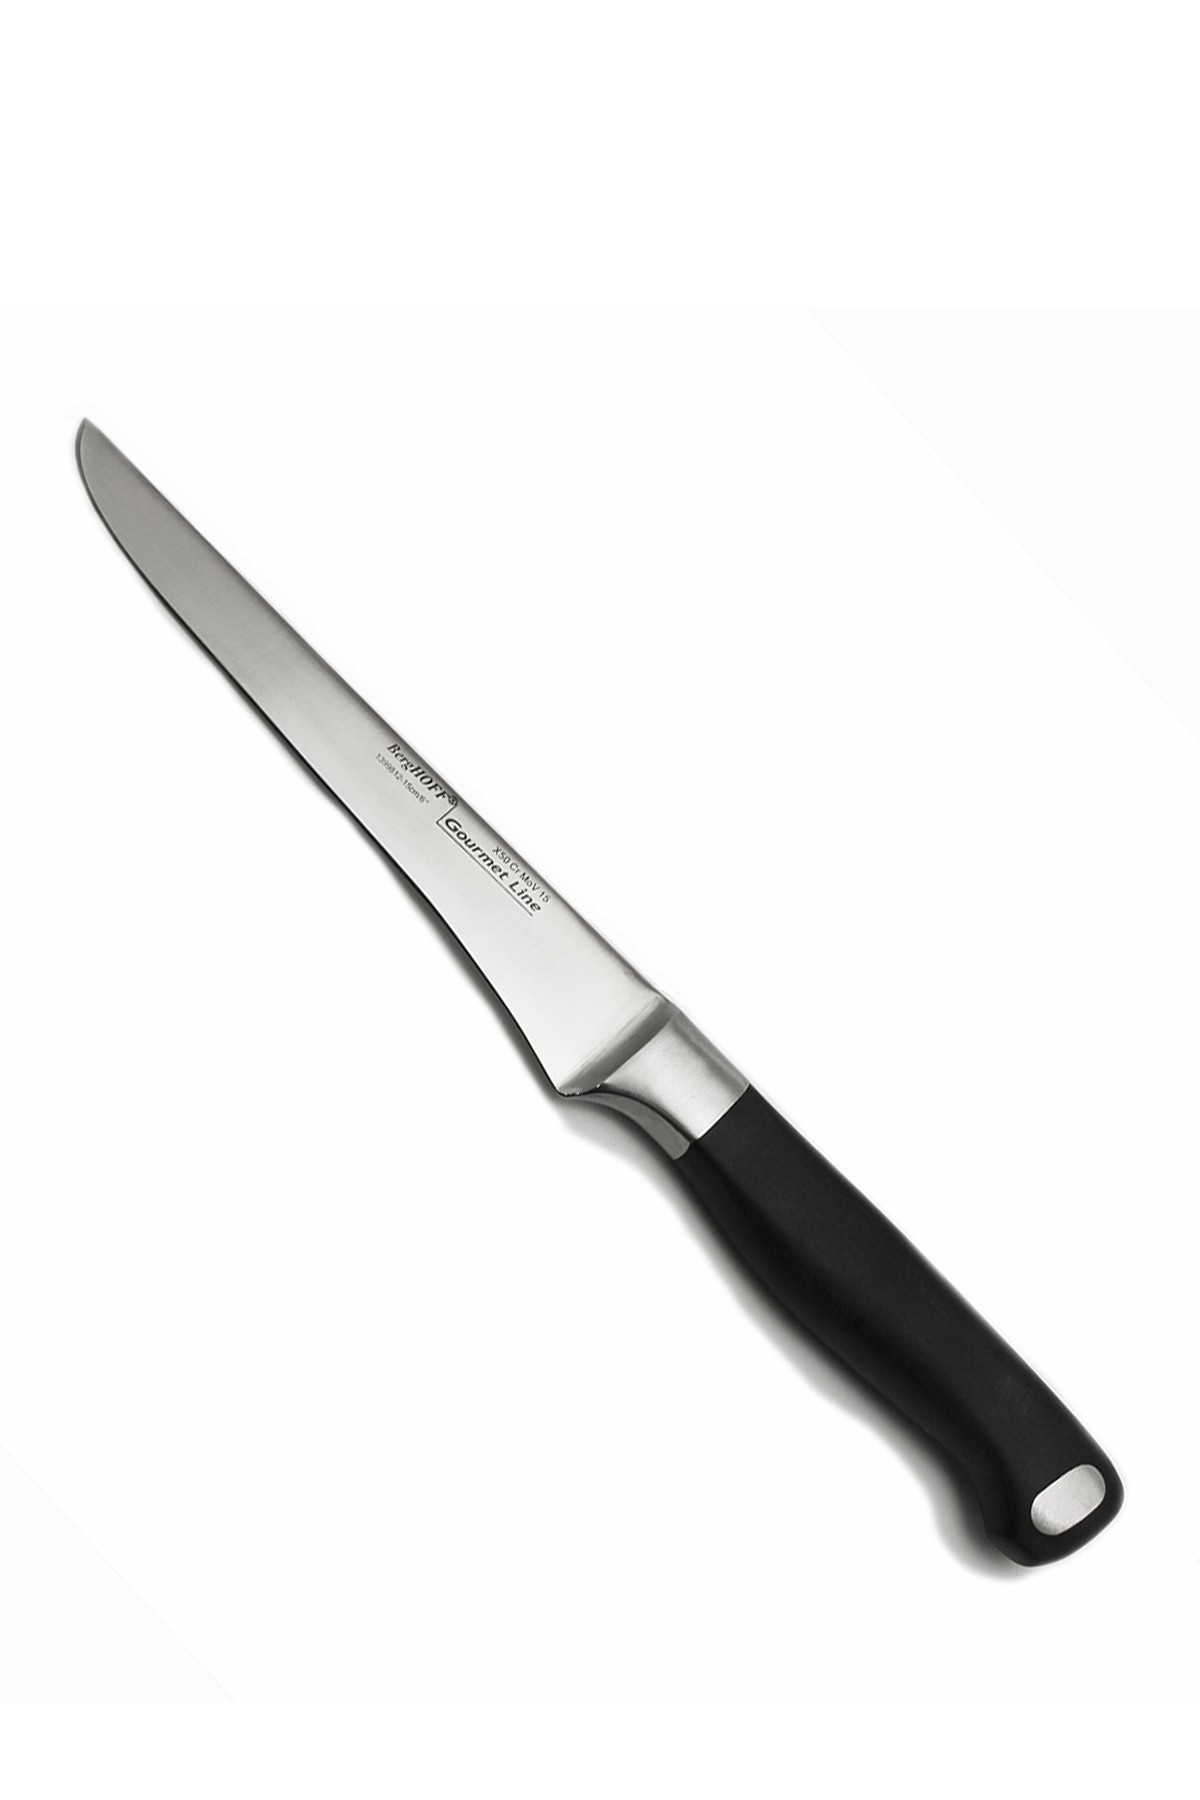 Купить Кухонные ножи 6-дюймовый обвалочный нож BergHOFF, цвет - бежевый .